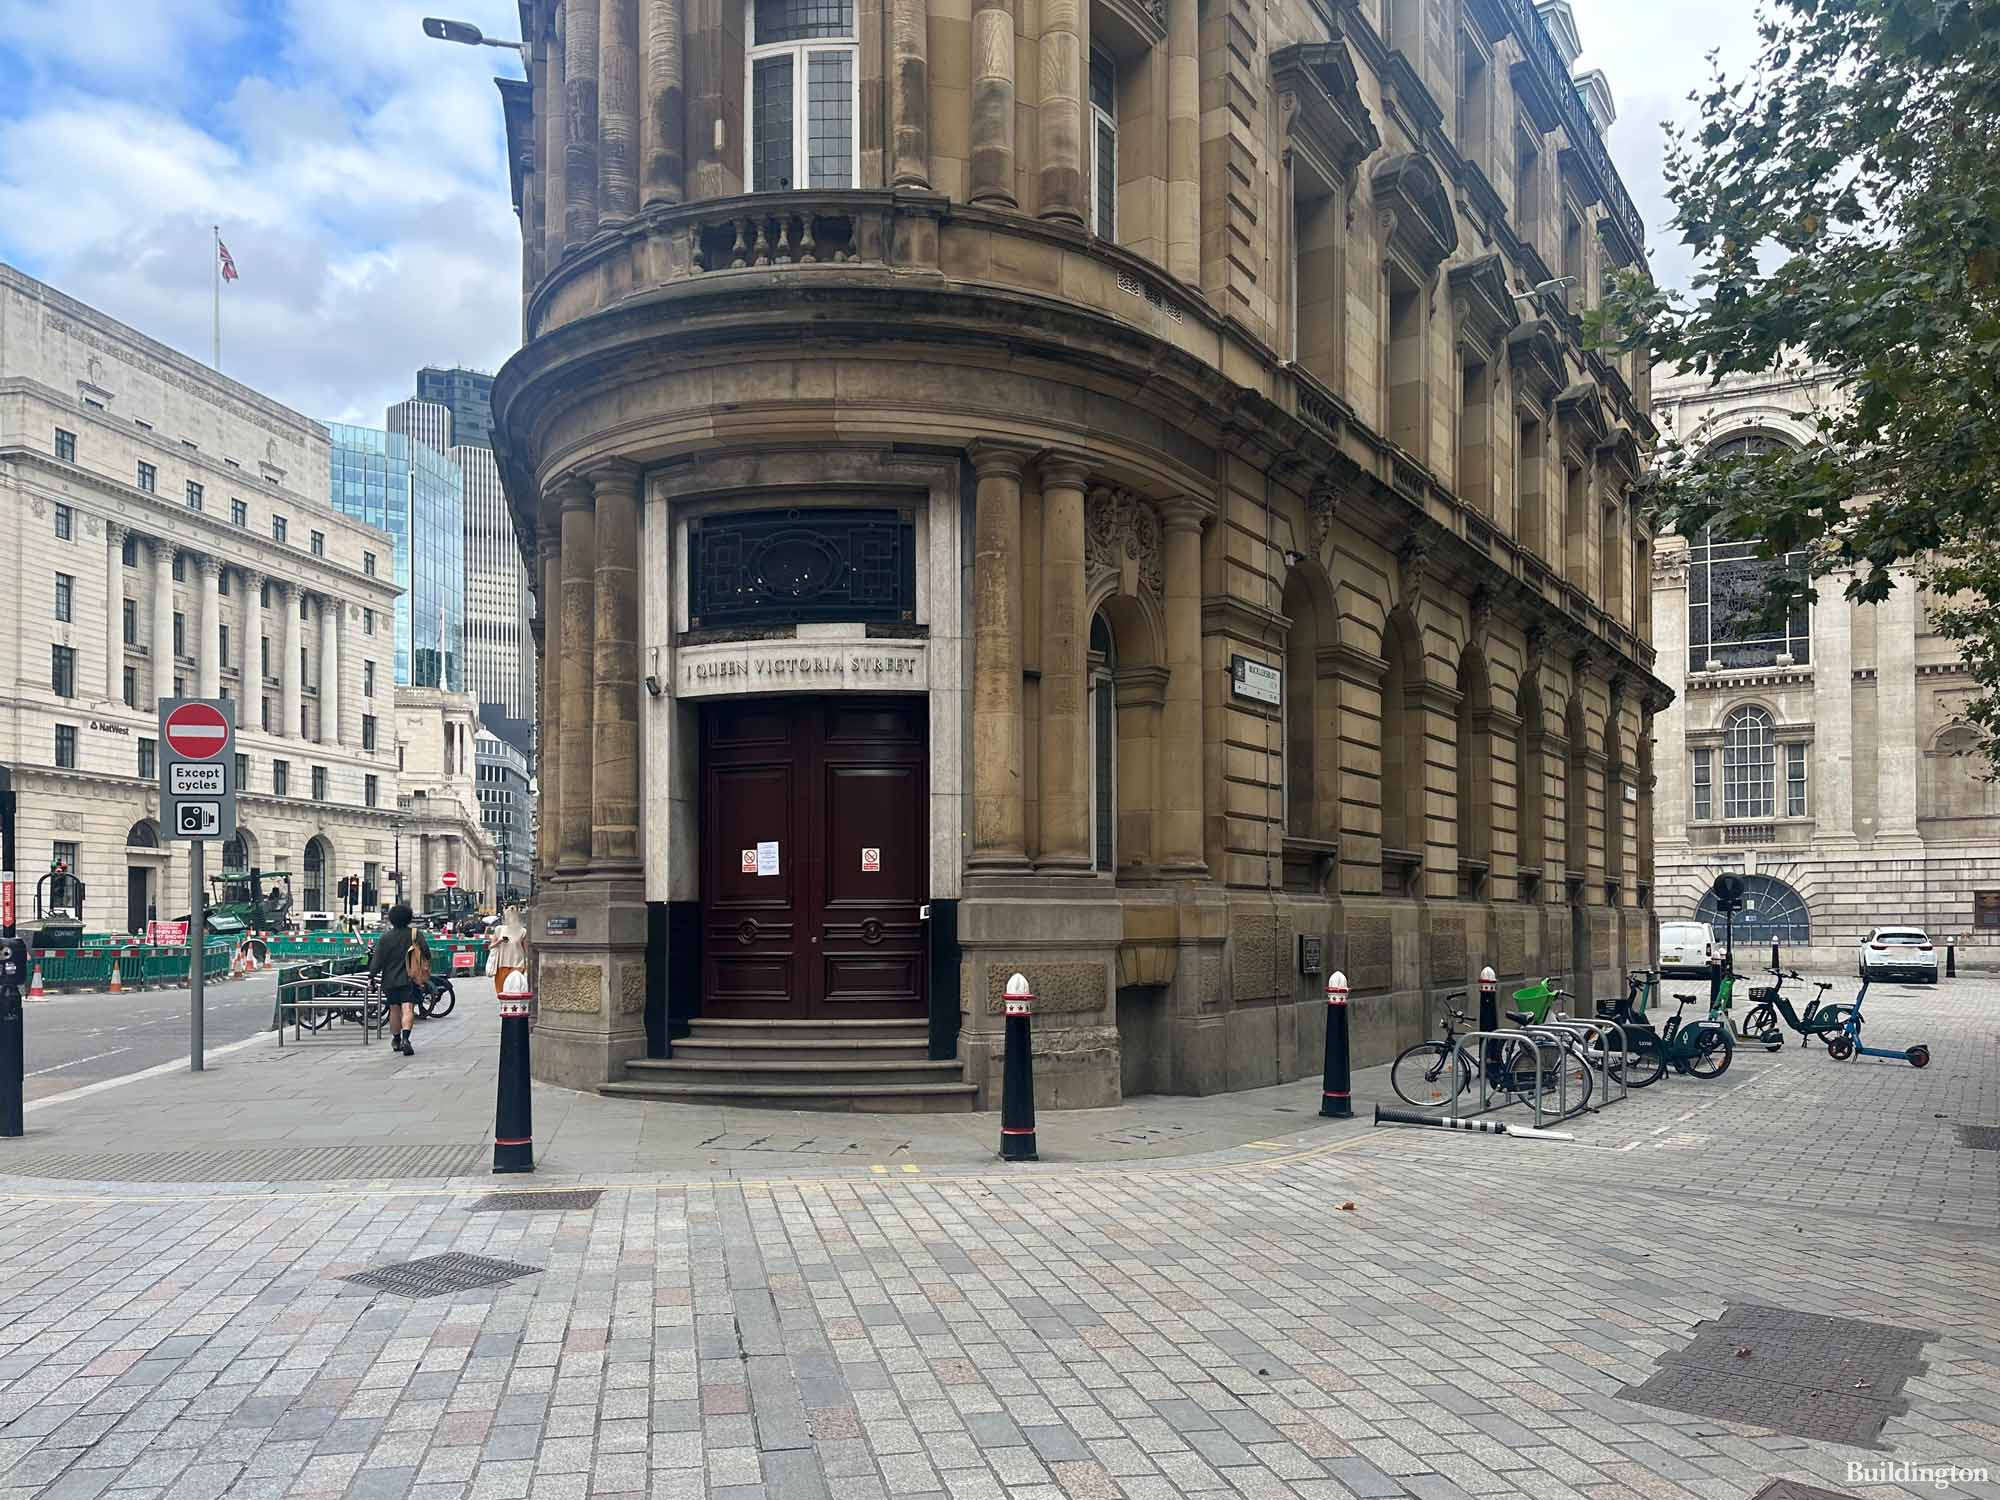 1 Queen Victoria Street building in the City of London EC4